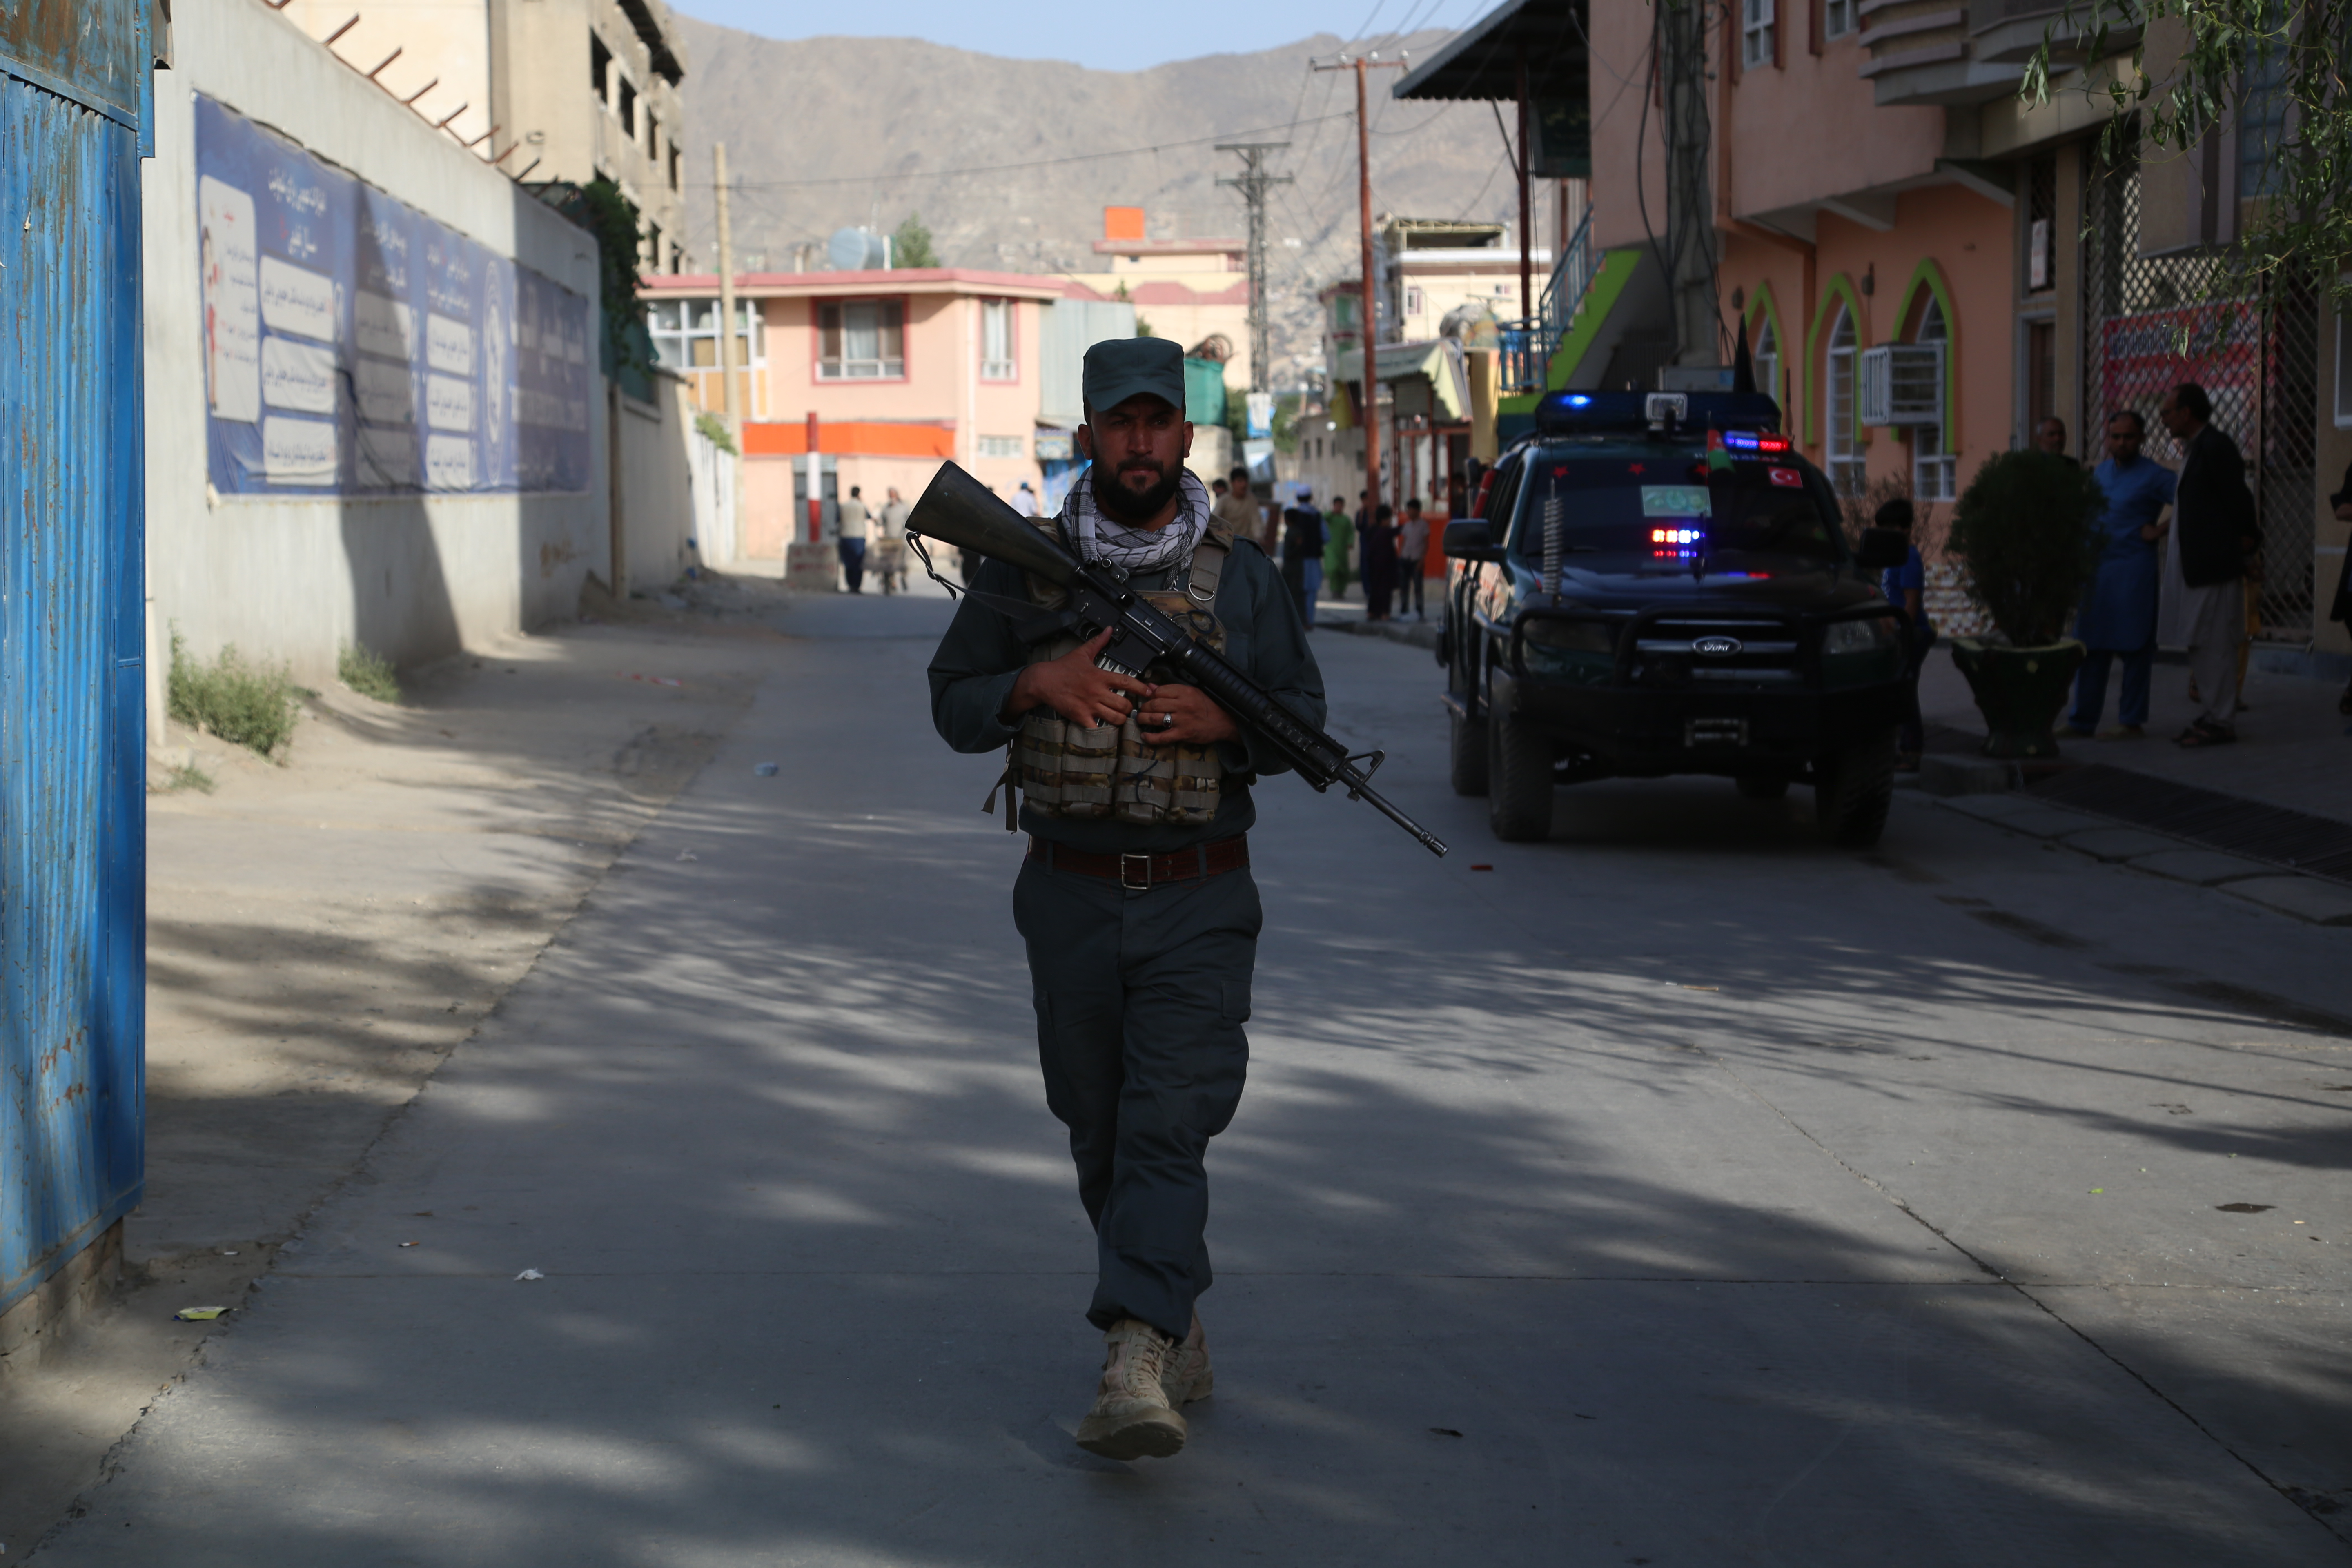 ▲8月6日，一名阿富汗政府官员在首都喀布尔遇袭身亡后，安全人员袭击现场执勤。塔利班随即承认是该组织实施了此次袭击。图/新华社